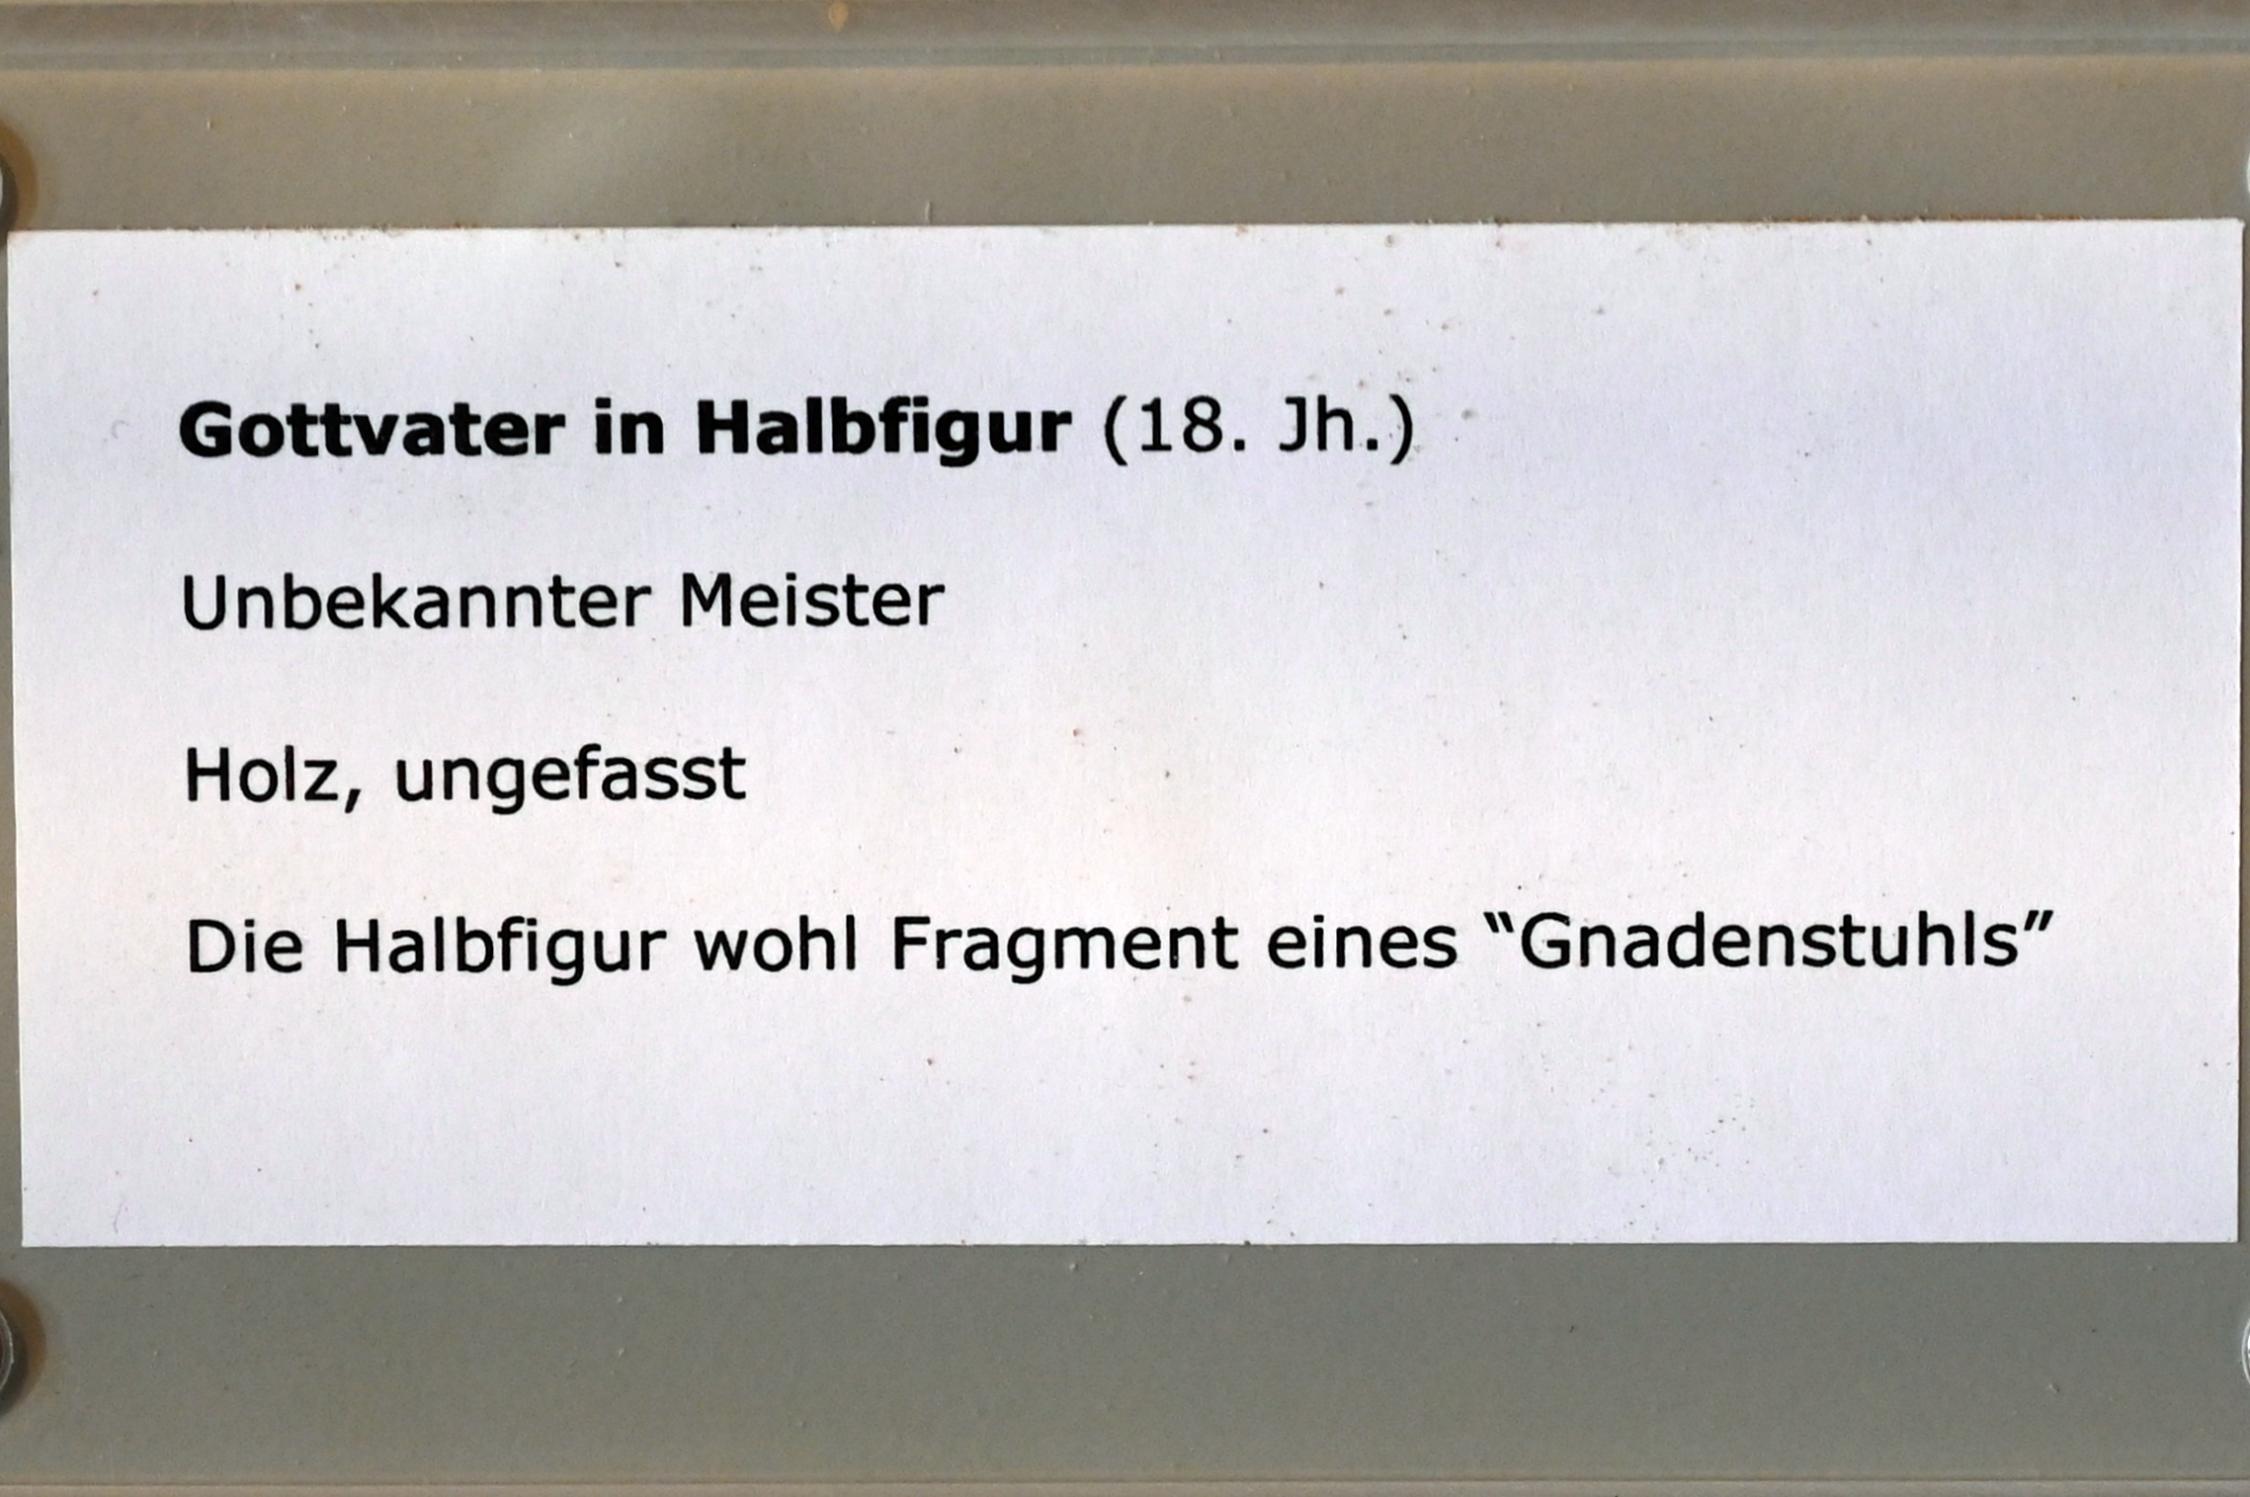 Gottvater in Halbfigur, Überlingen, Städtisches Museum, Kleiner Barocksaal, 18. Jhd., Bild 3/3